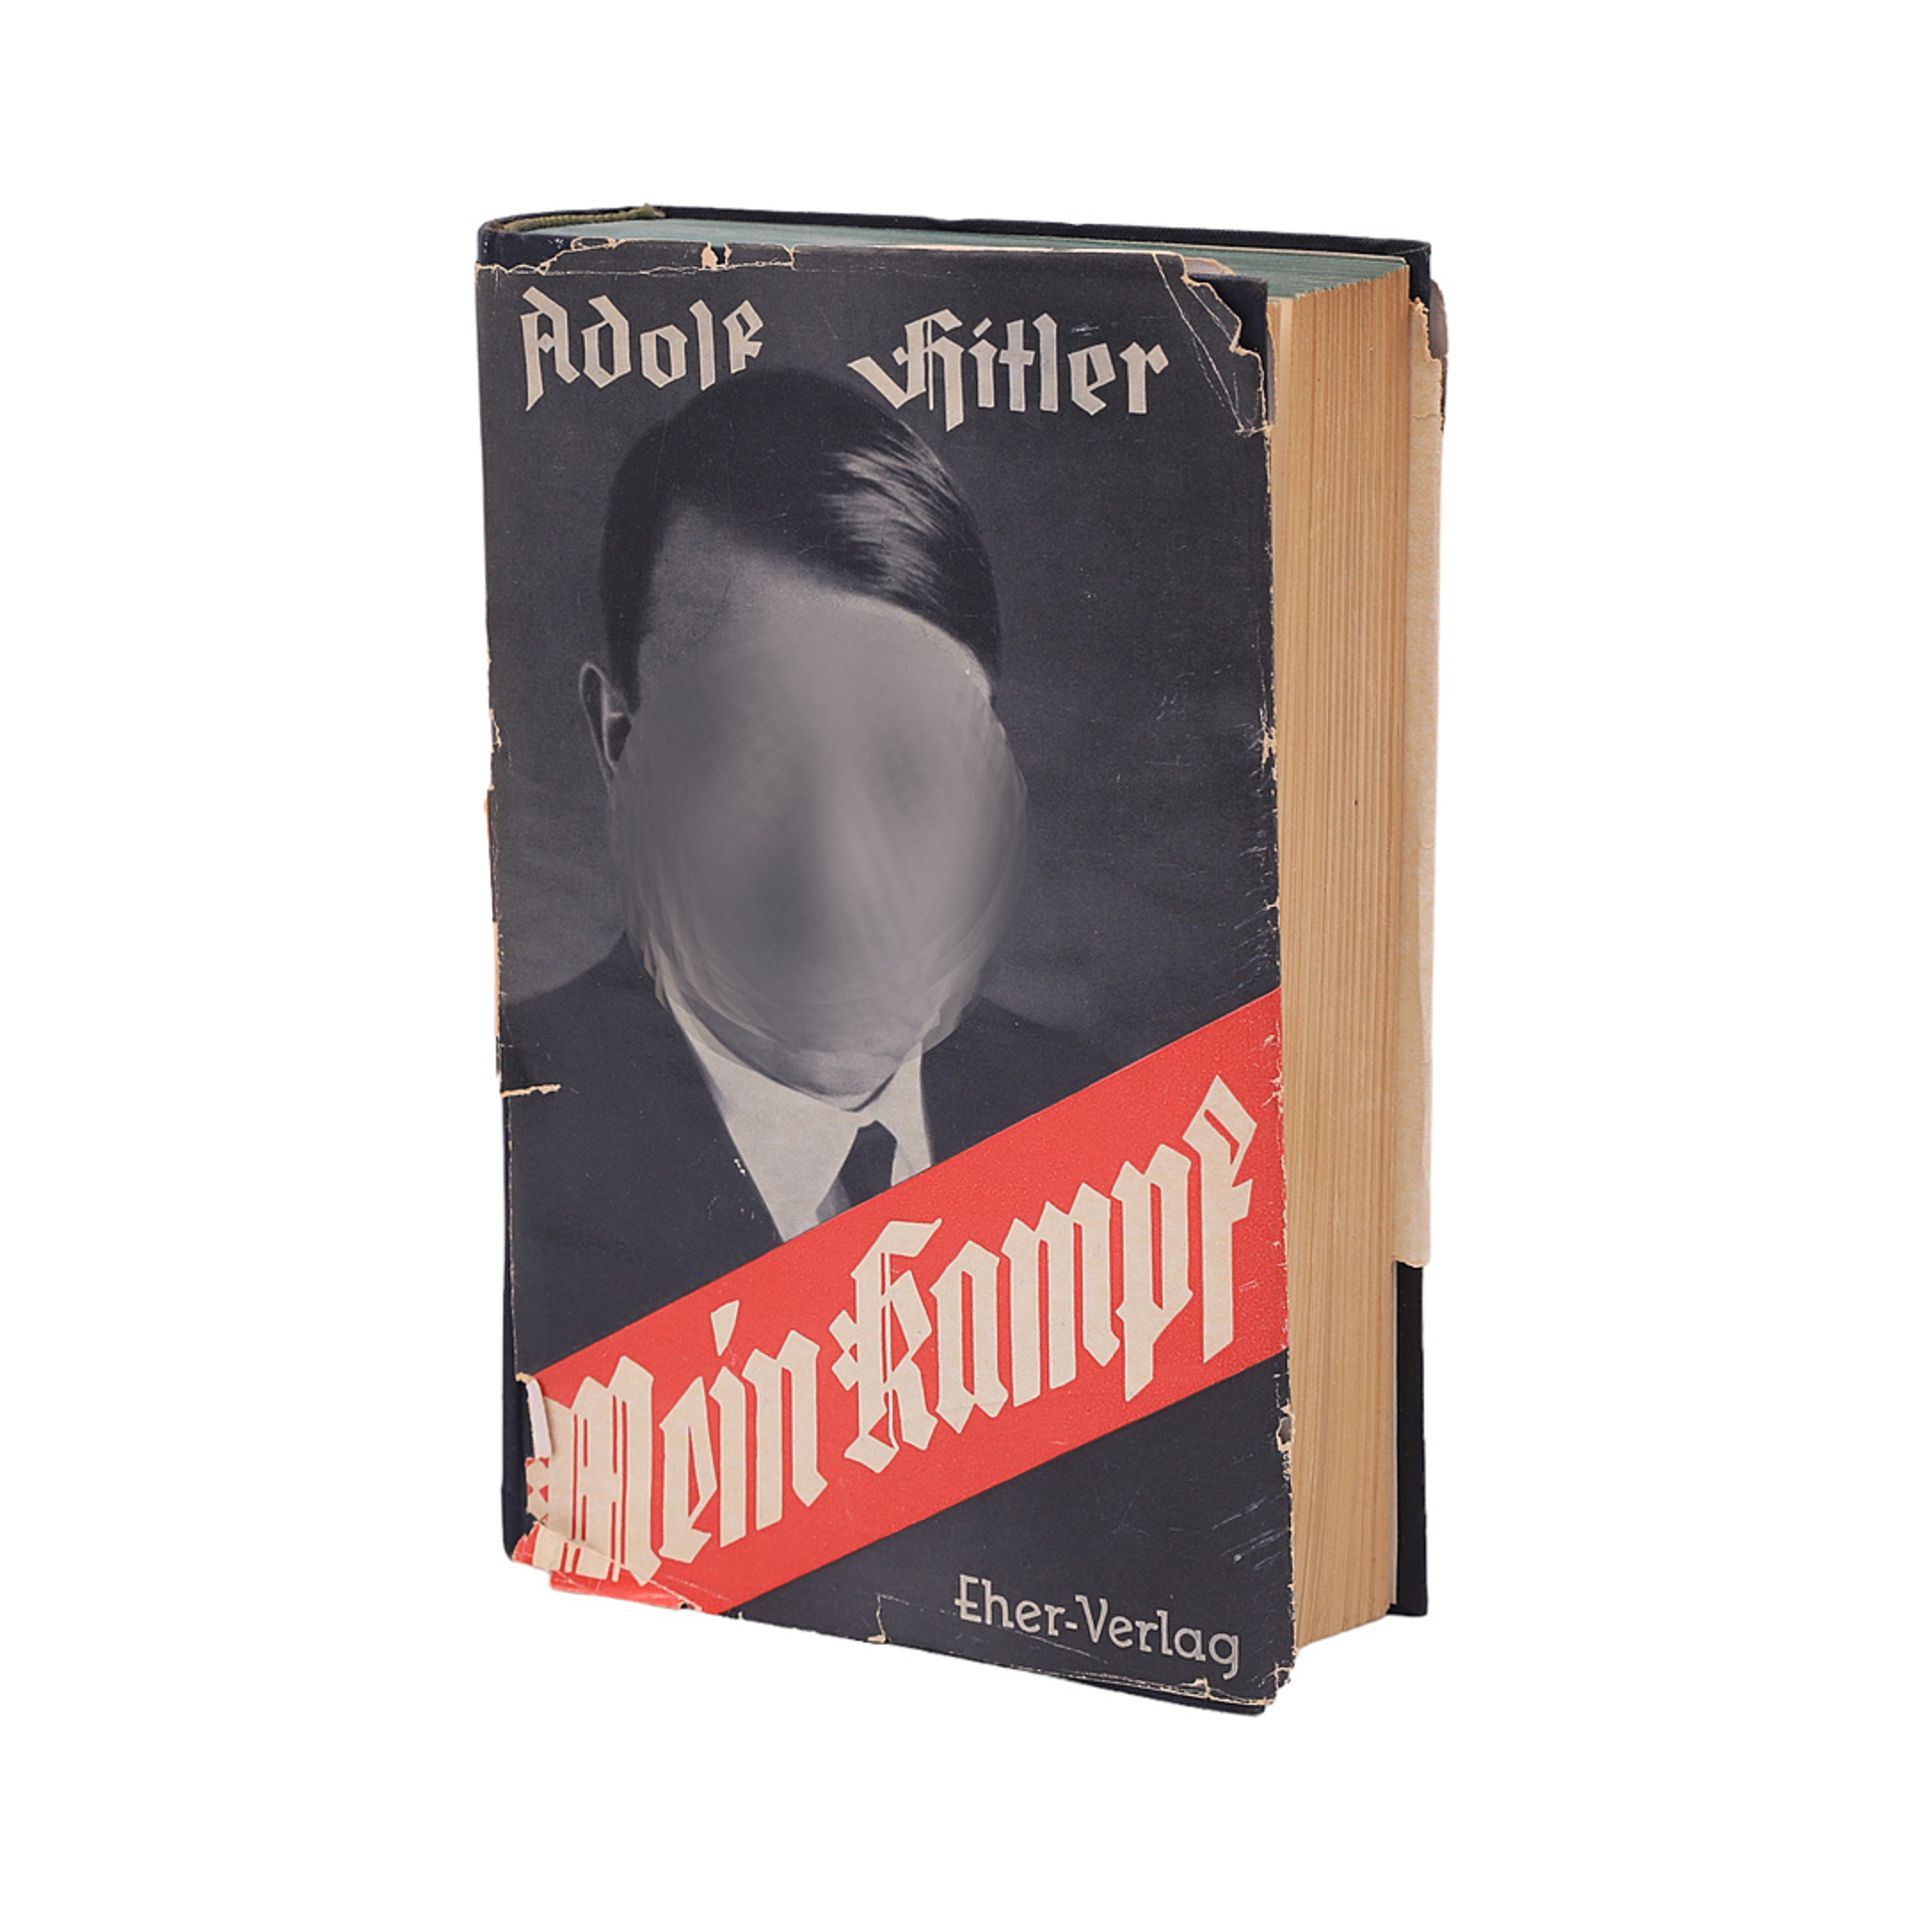 A. Hitler, "Mein Kampf", 1933